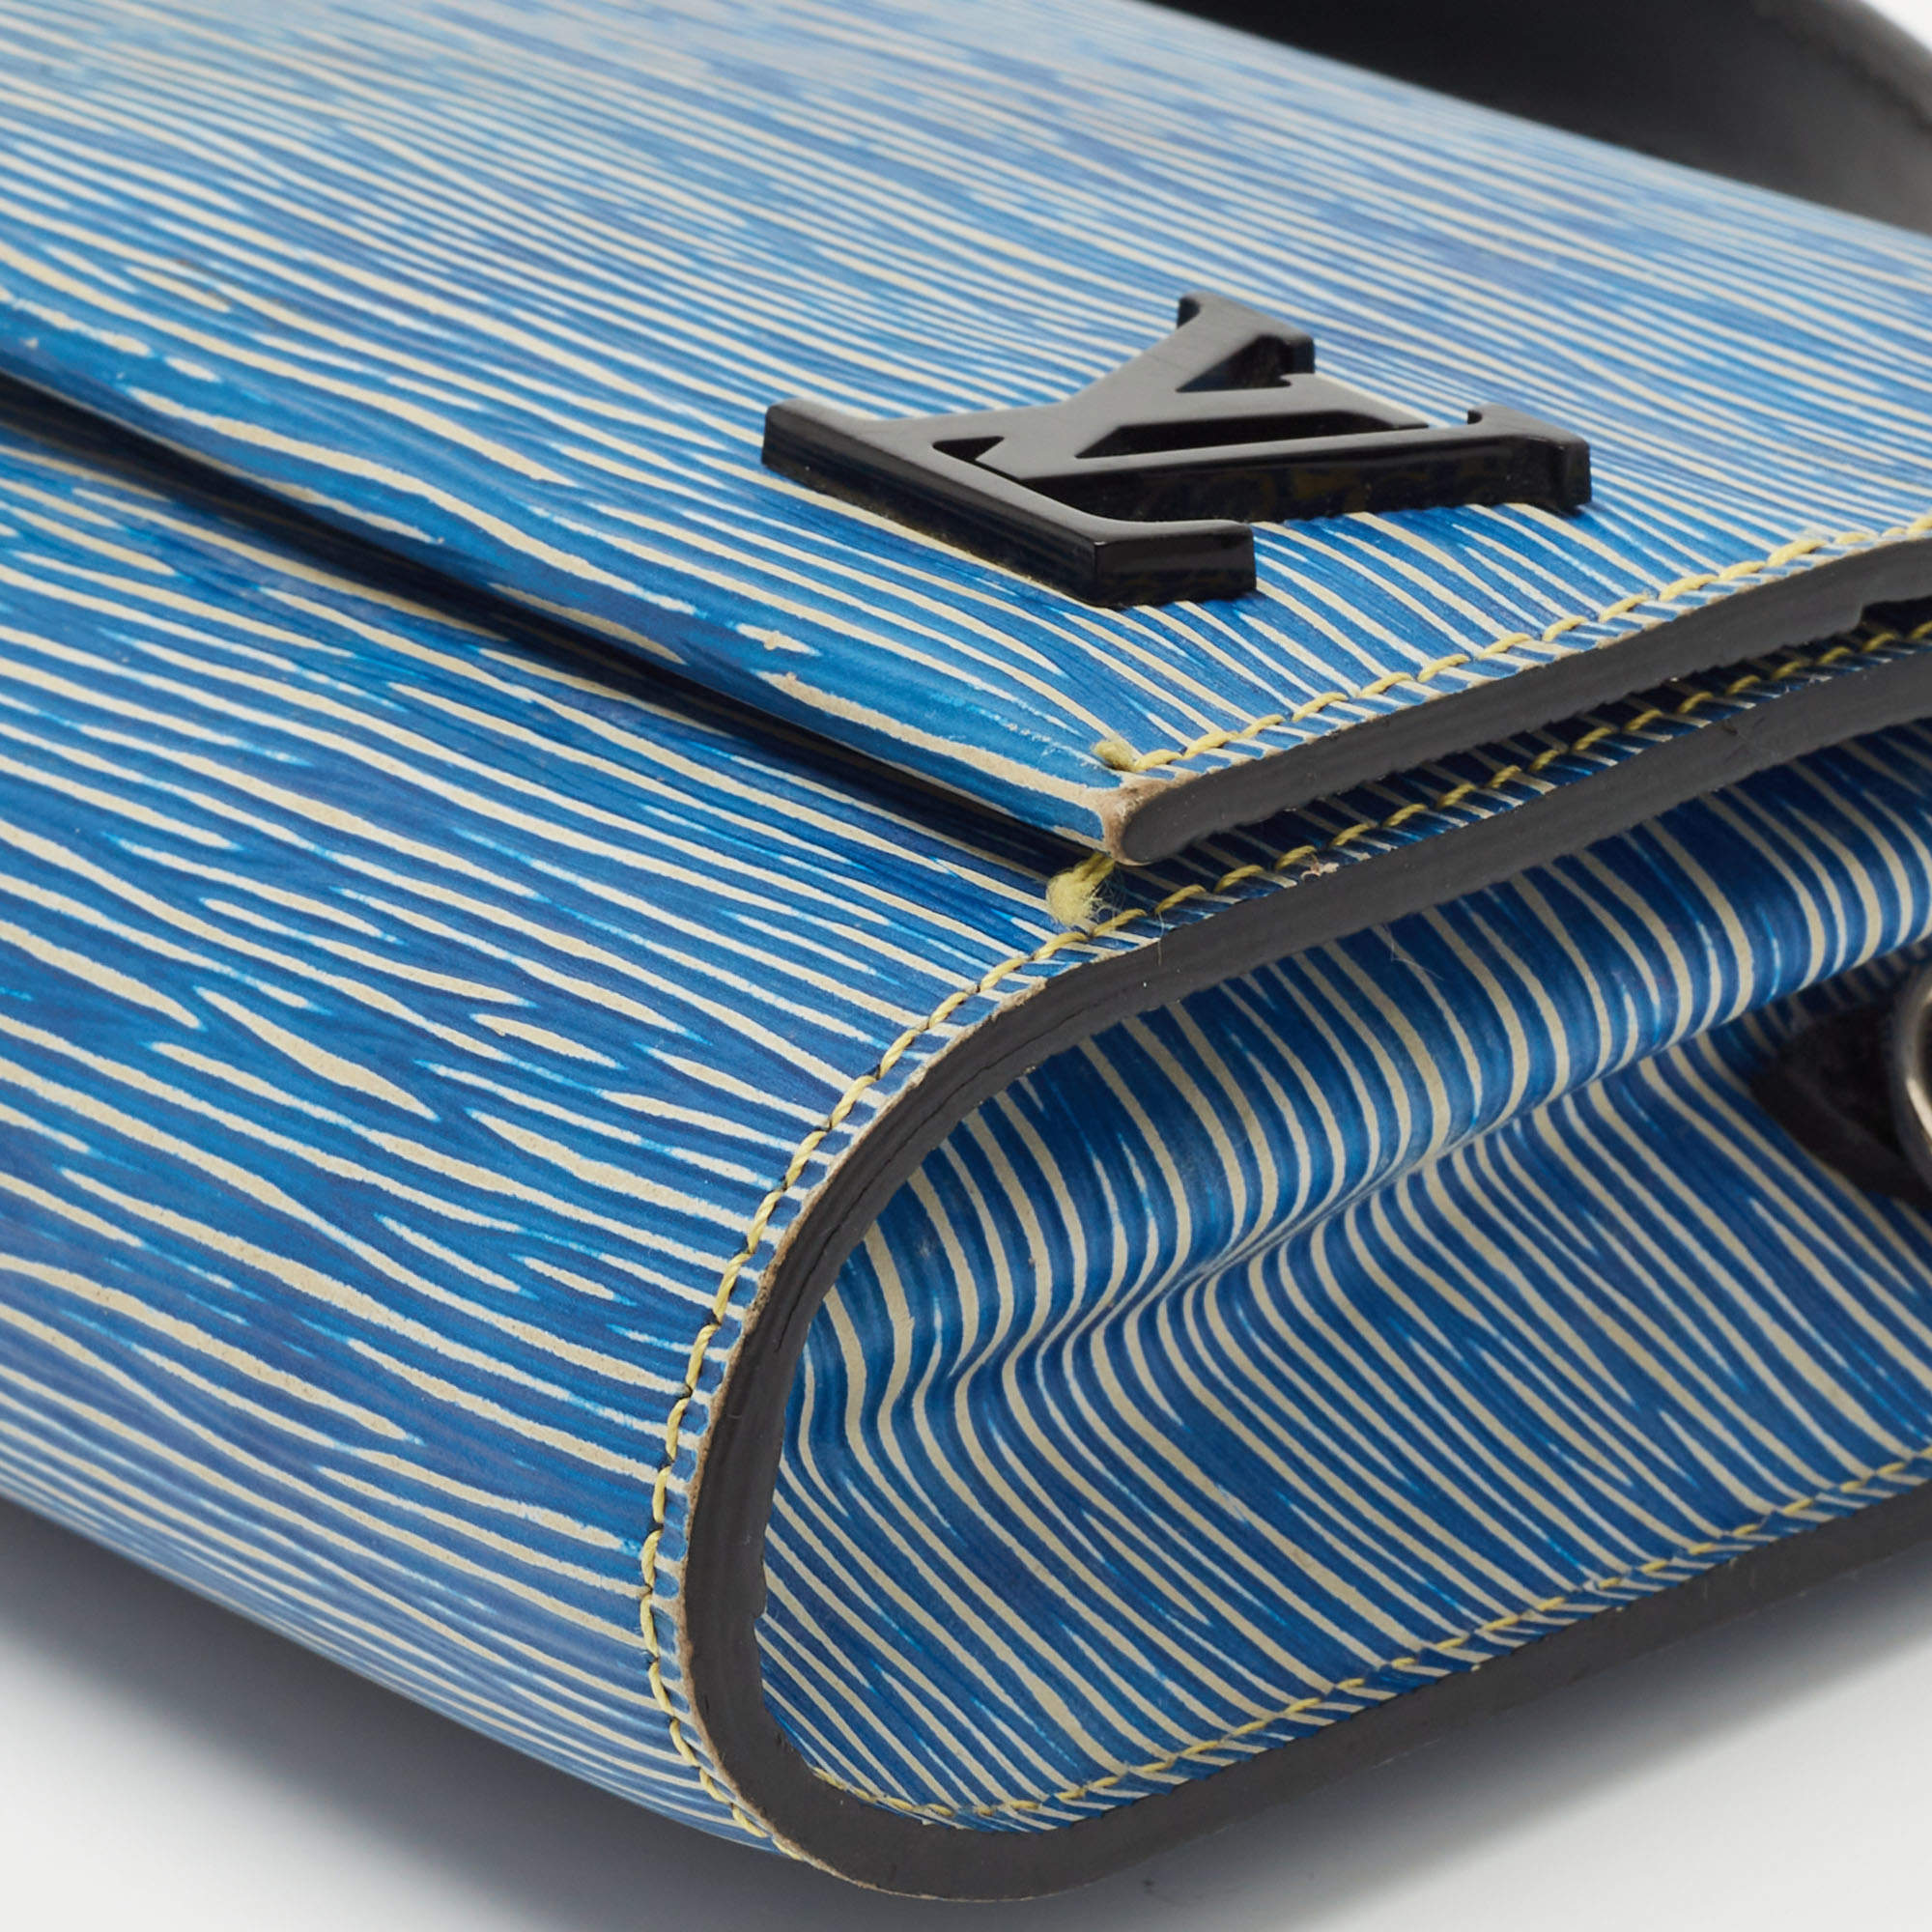 Louis Vuitton Clery Epi Denim Bag – Votre Luxe